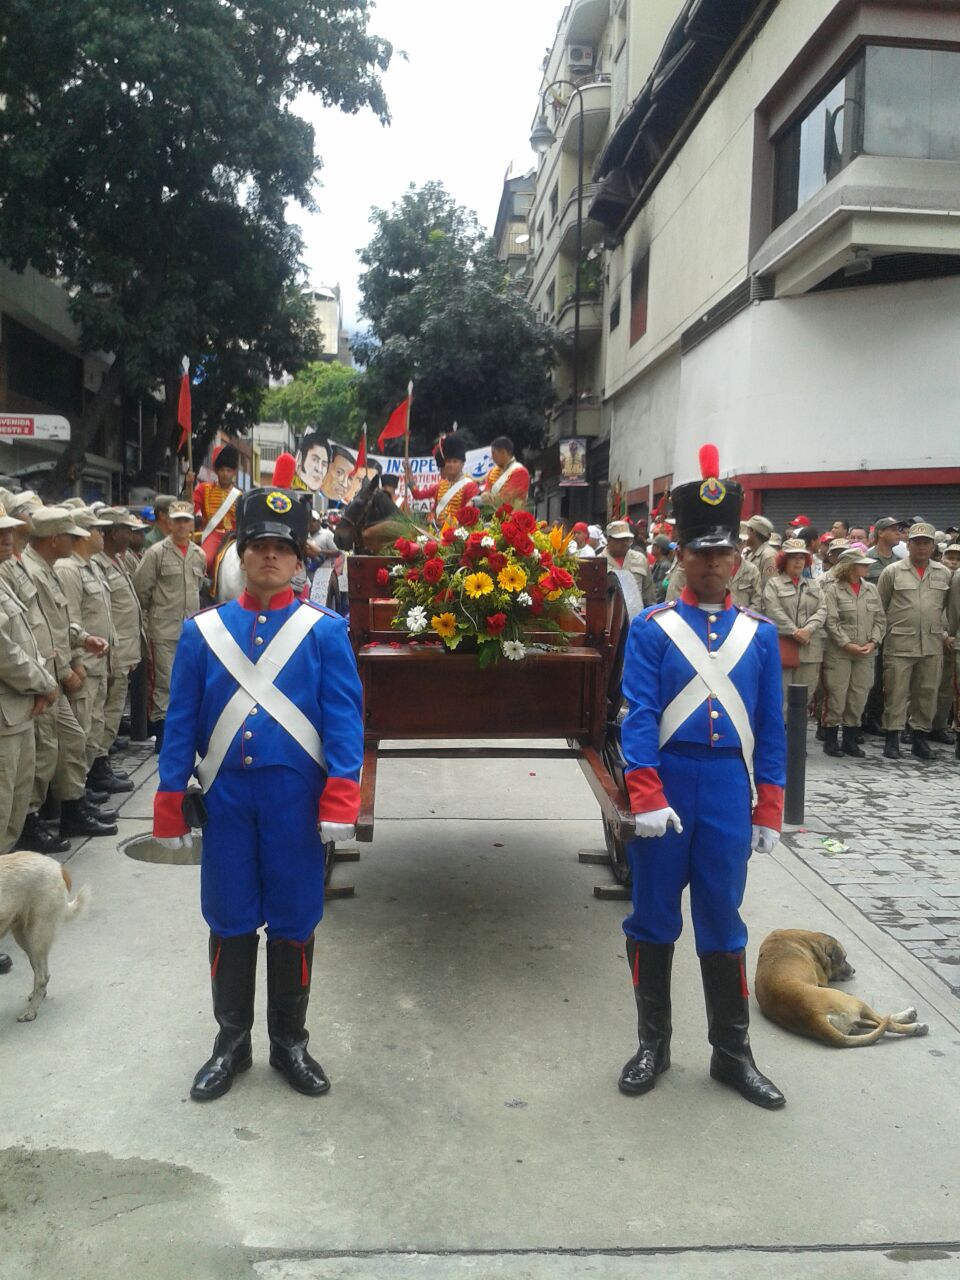 Los restos simbólicos de Pedro Camejo llegaron a la Asamblea Nacional este martes, donde permanecerán en capilla ardiente y los miembros del órgano legislativo y el pueblo venezolano le rendirán honores.